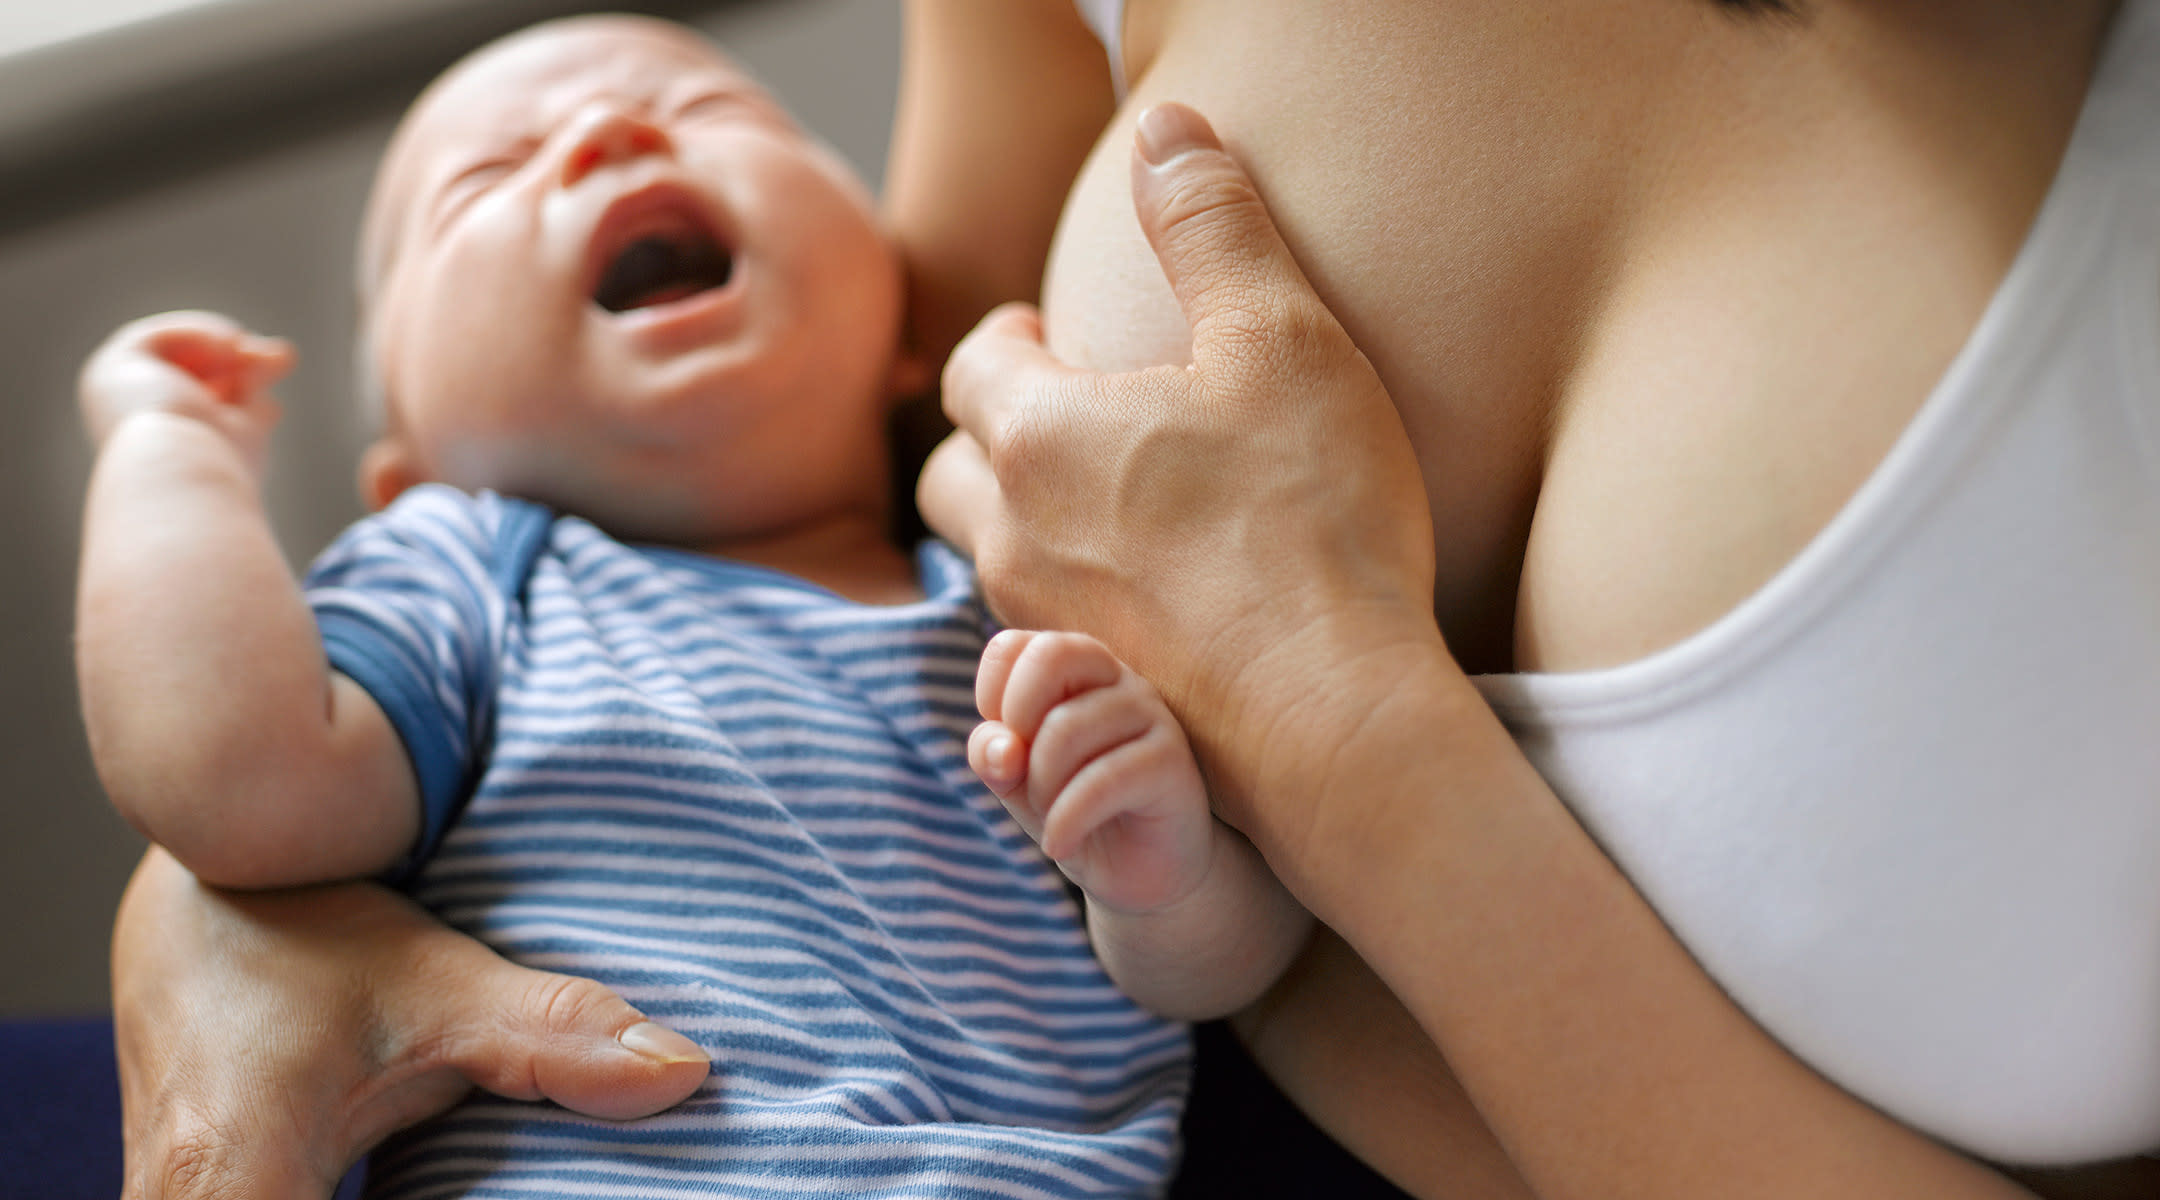 Dinh dưỡng cho bé sau cai sữa, tránh cho trẻ cảm giác hụt hẫng